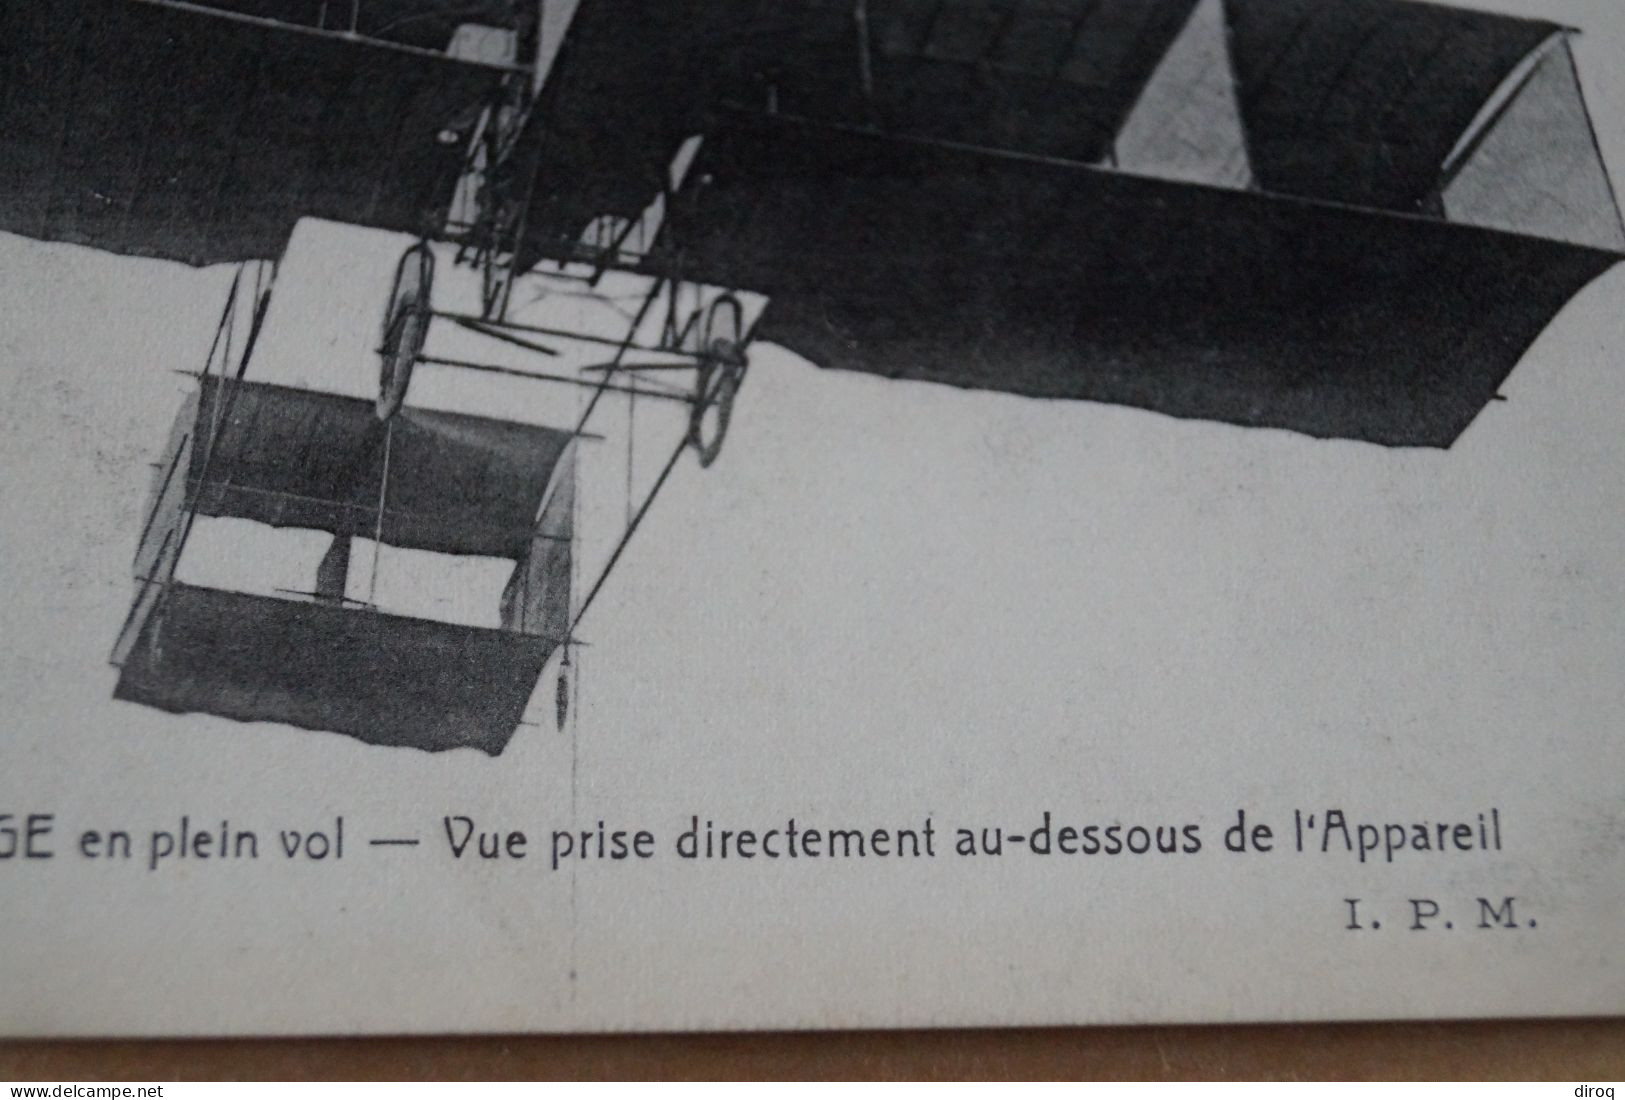 Aviation ,aviateur,l'Aéroplane Delagrange, Ancienne Carte Postale,collection - Flieger